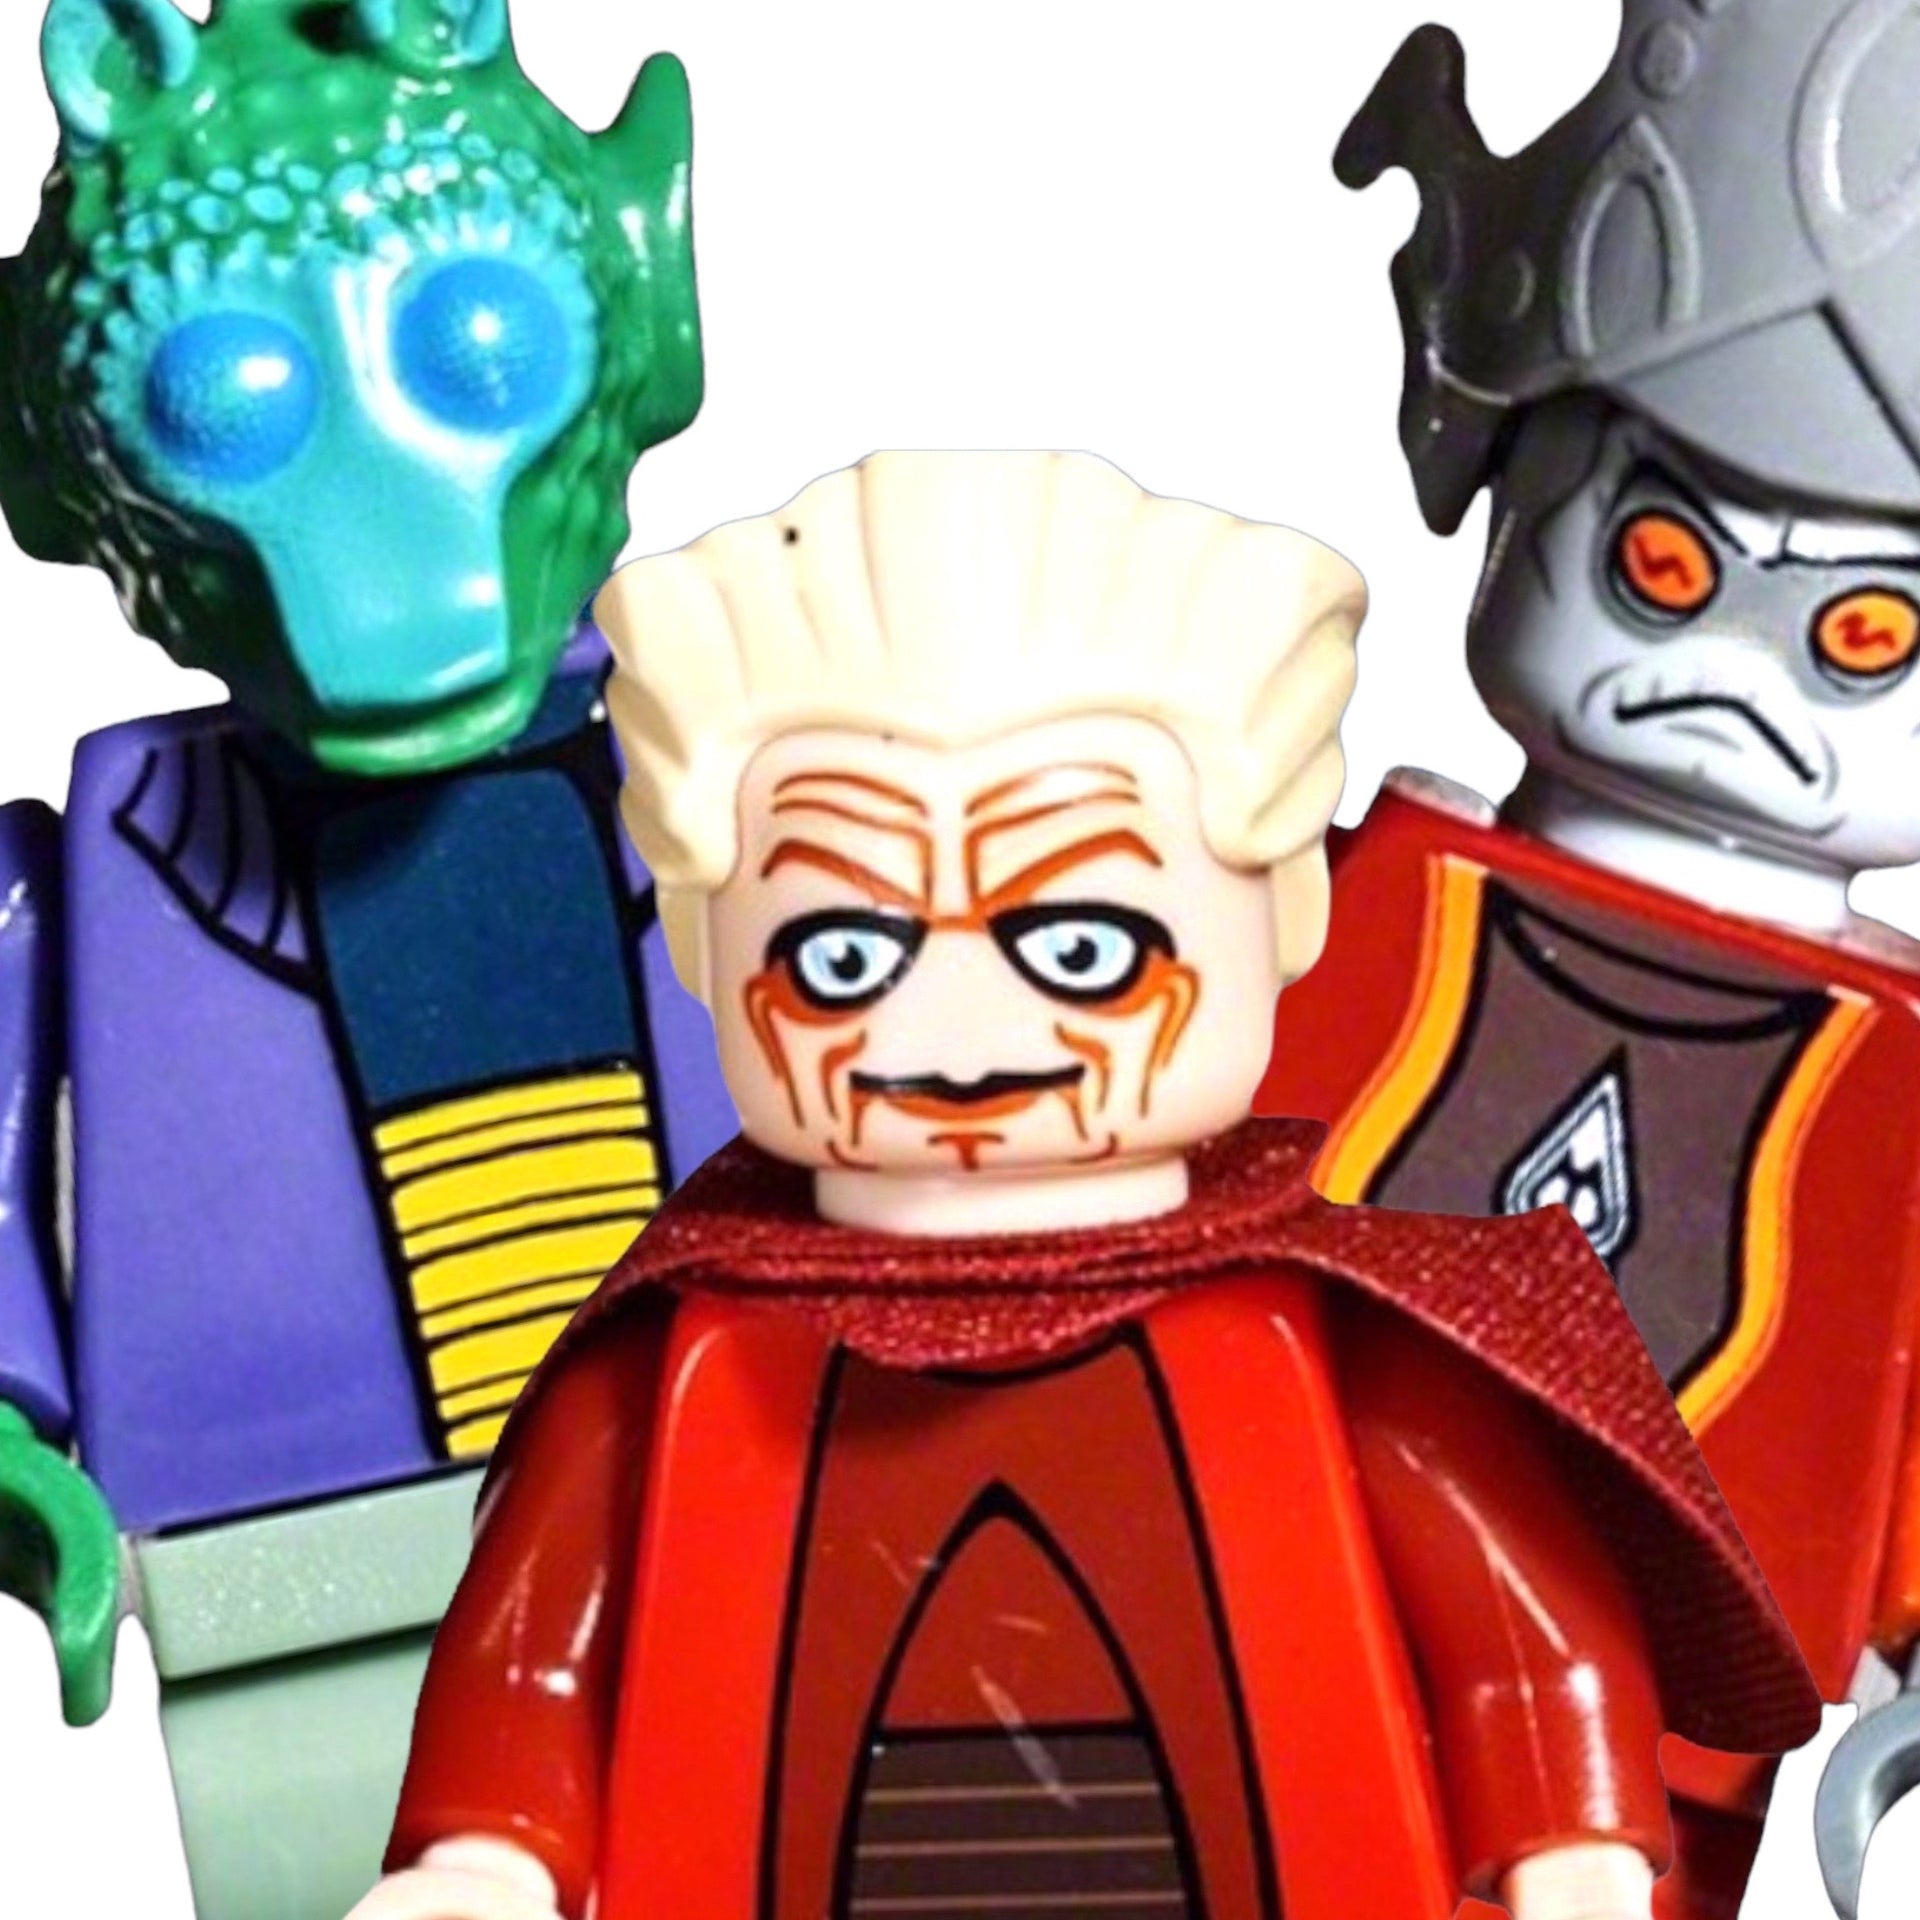 Lego Star Wars - Shop